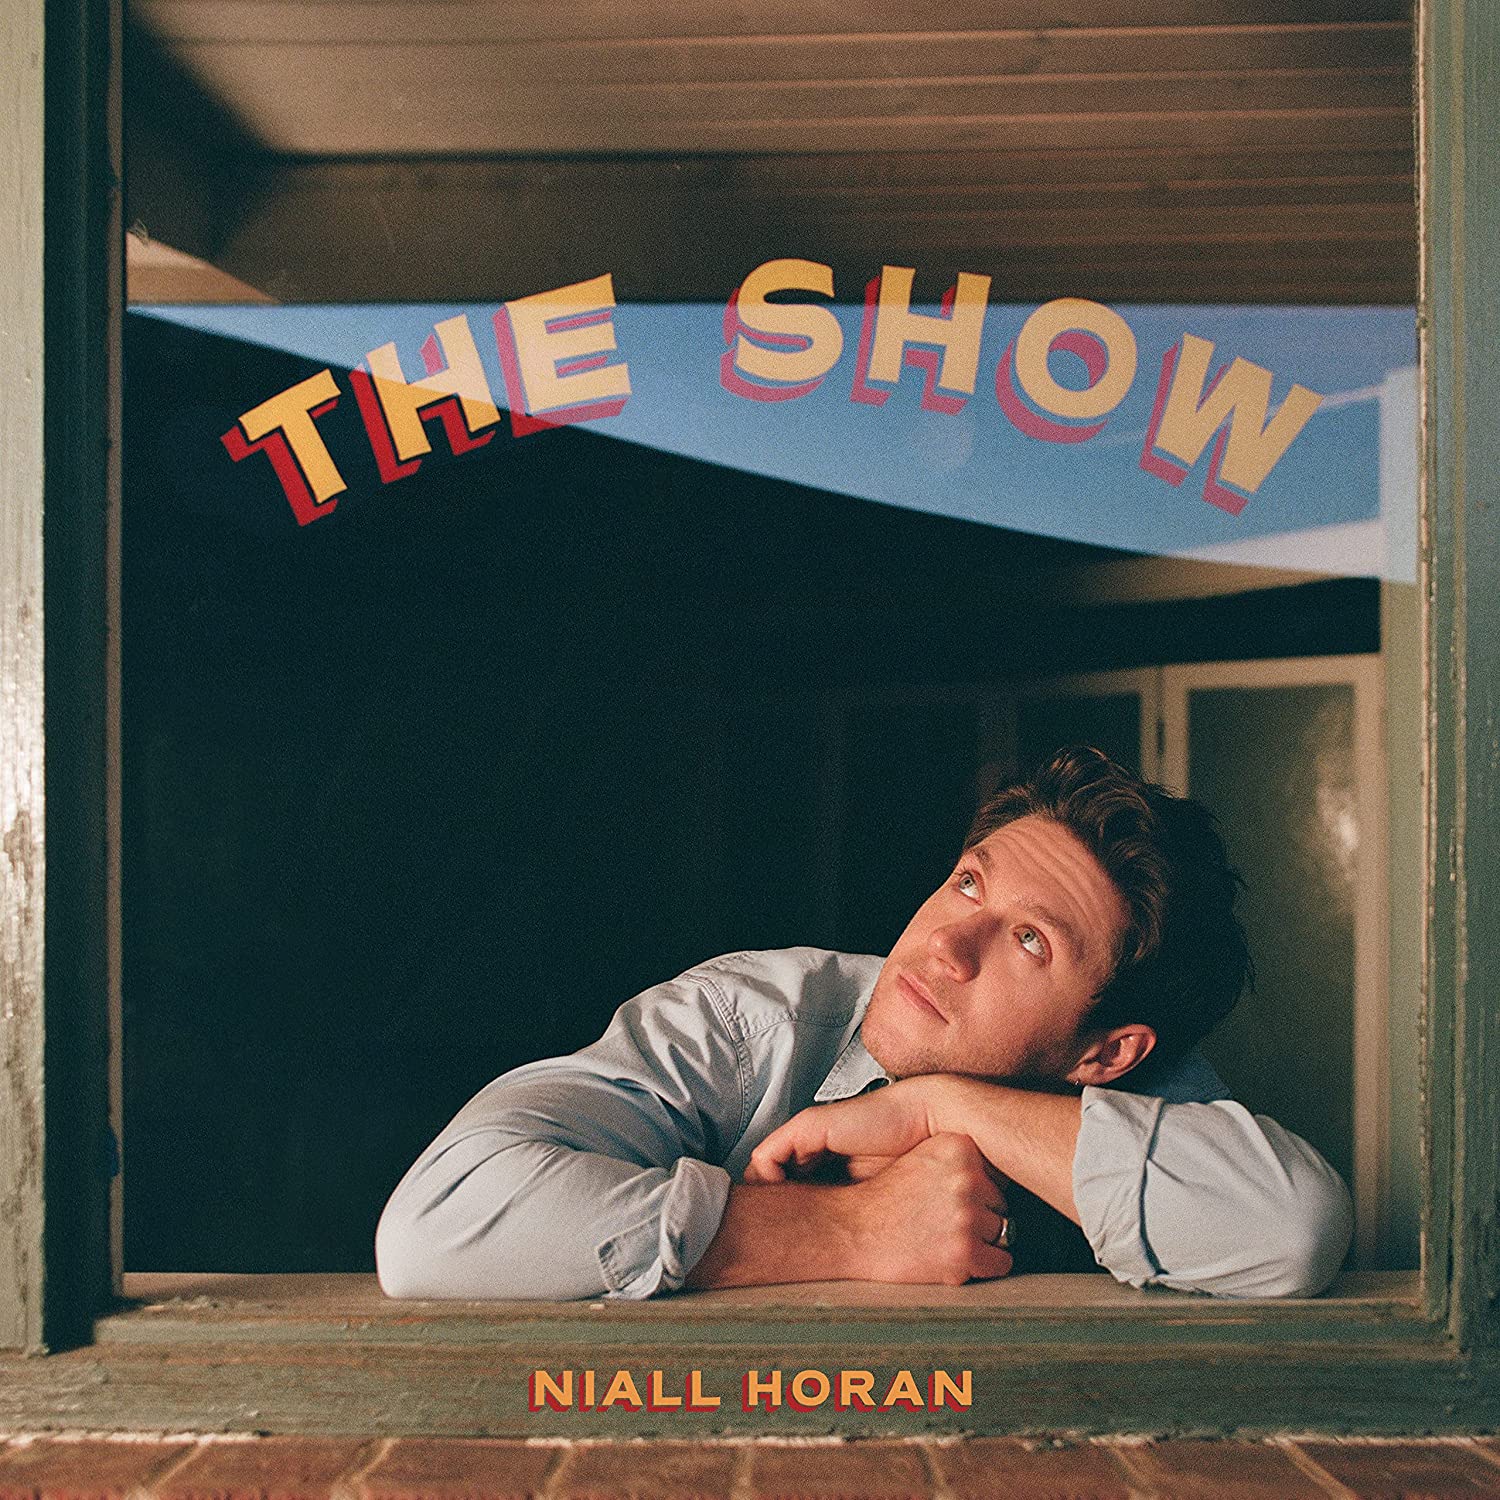 Niall Horan nuovo album e tour - immagini